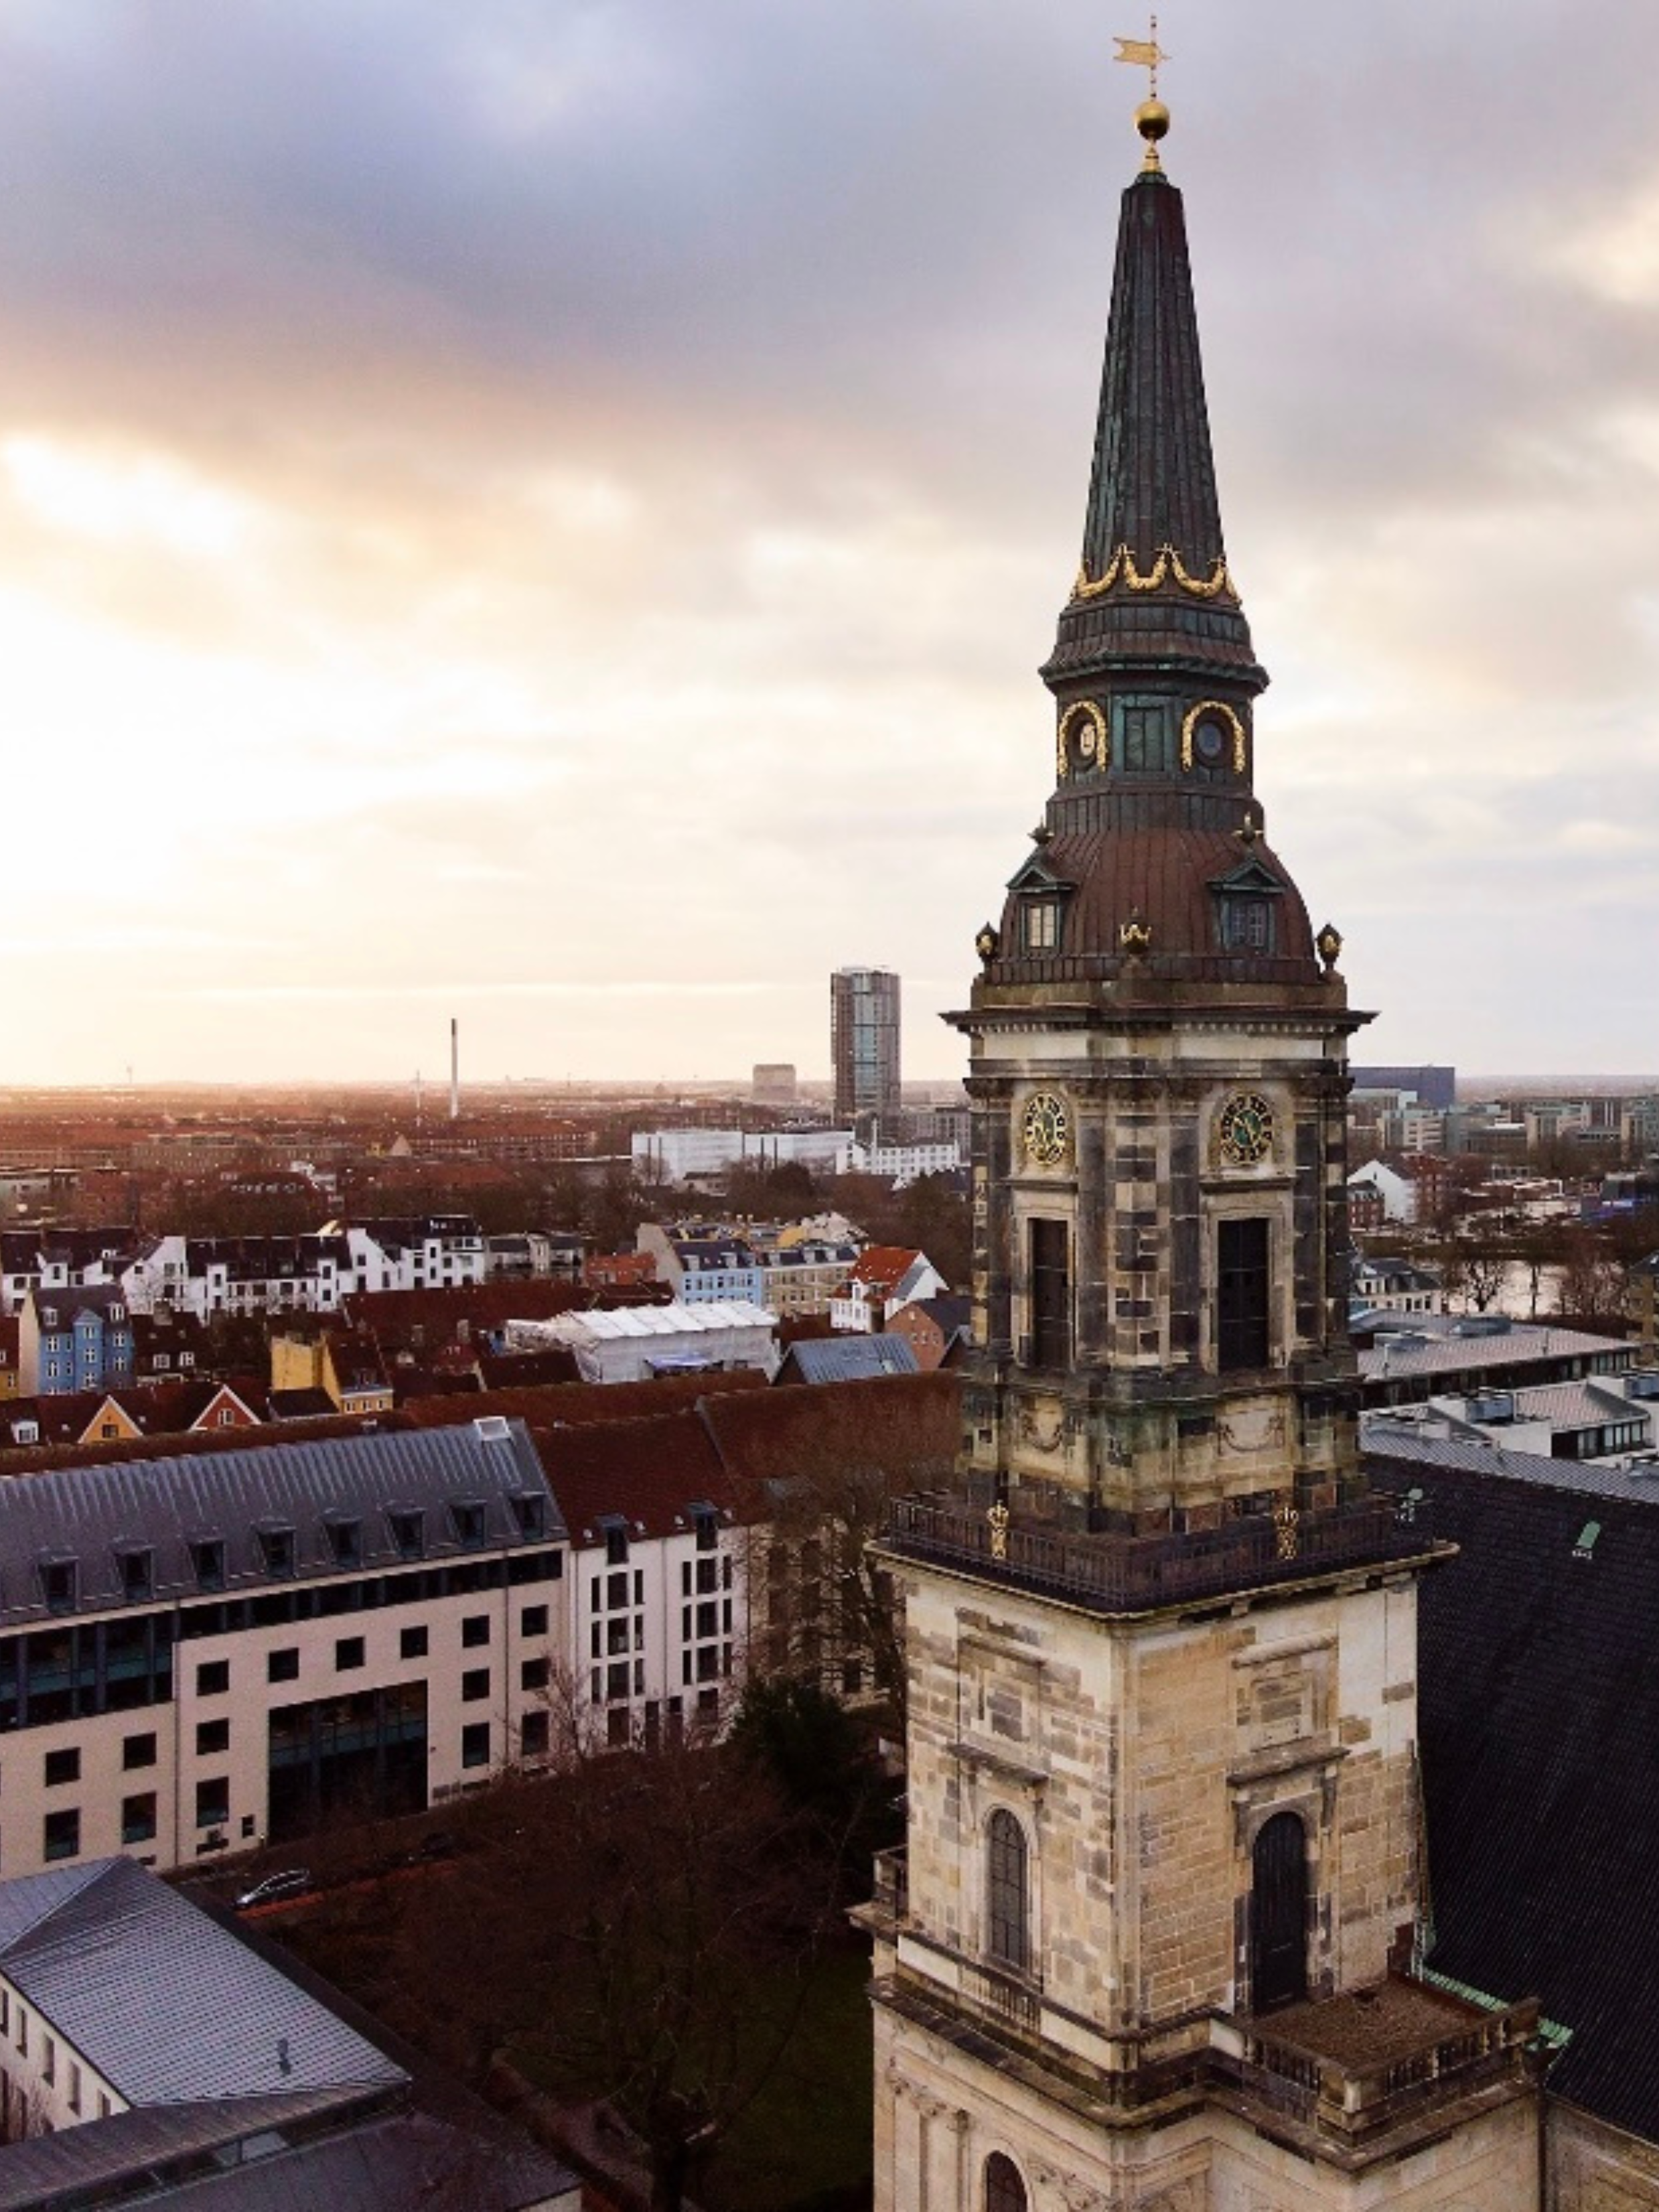 Kirketårnet med udsigt over Christianshavn